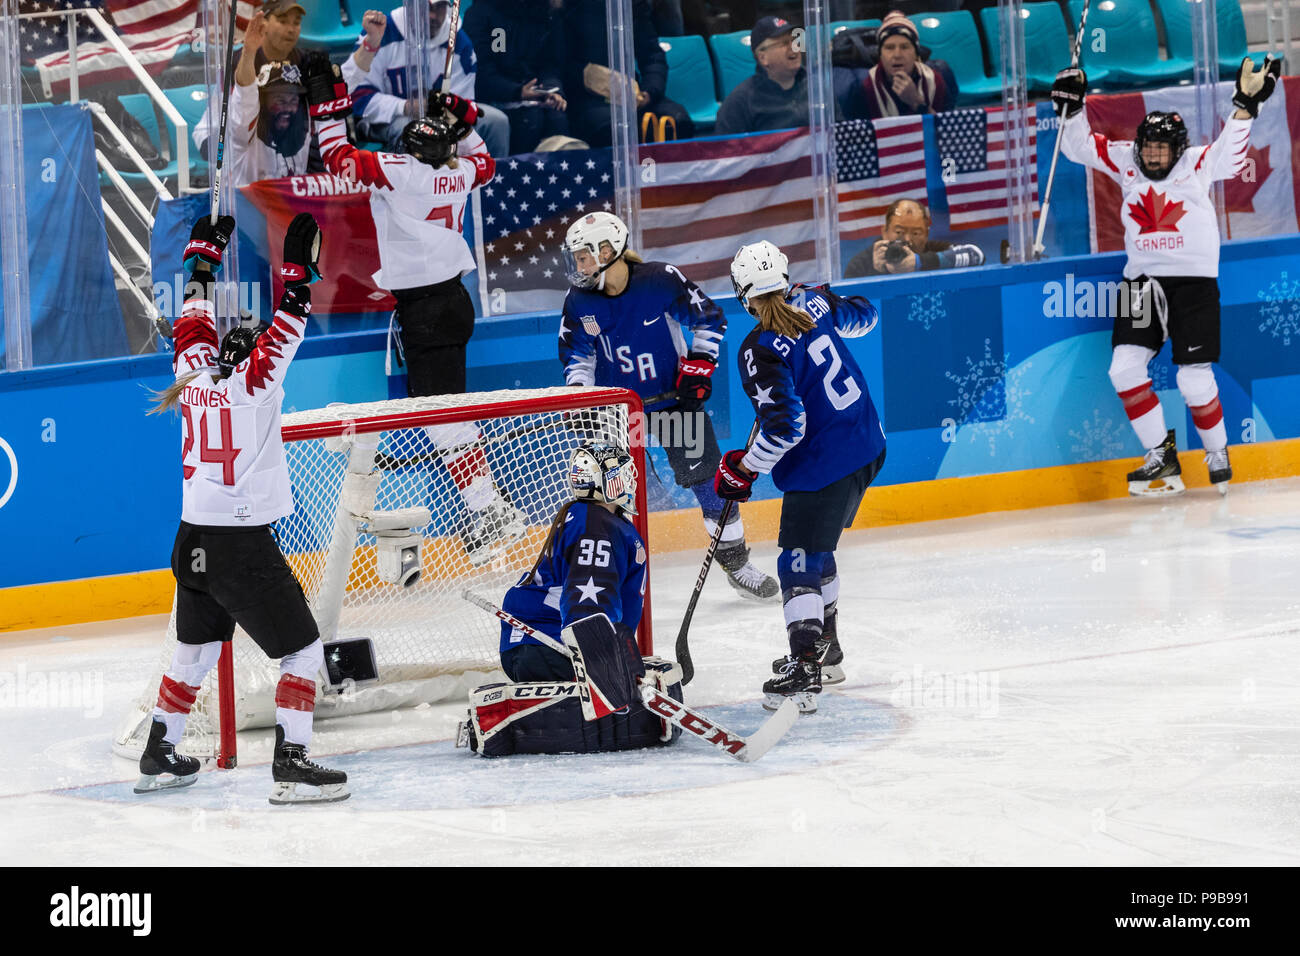 Le Canada célèbre l'équipe de marquer un but dans la médaille d'or jeu de hockey sur glace contre le Canada aux Jeux Olympiques d'hiver de PyeongChang 2018 Banque D'Images